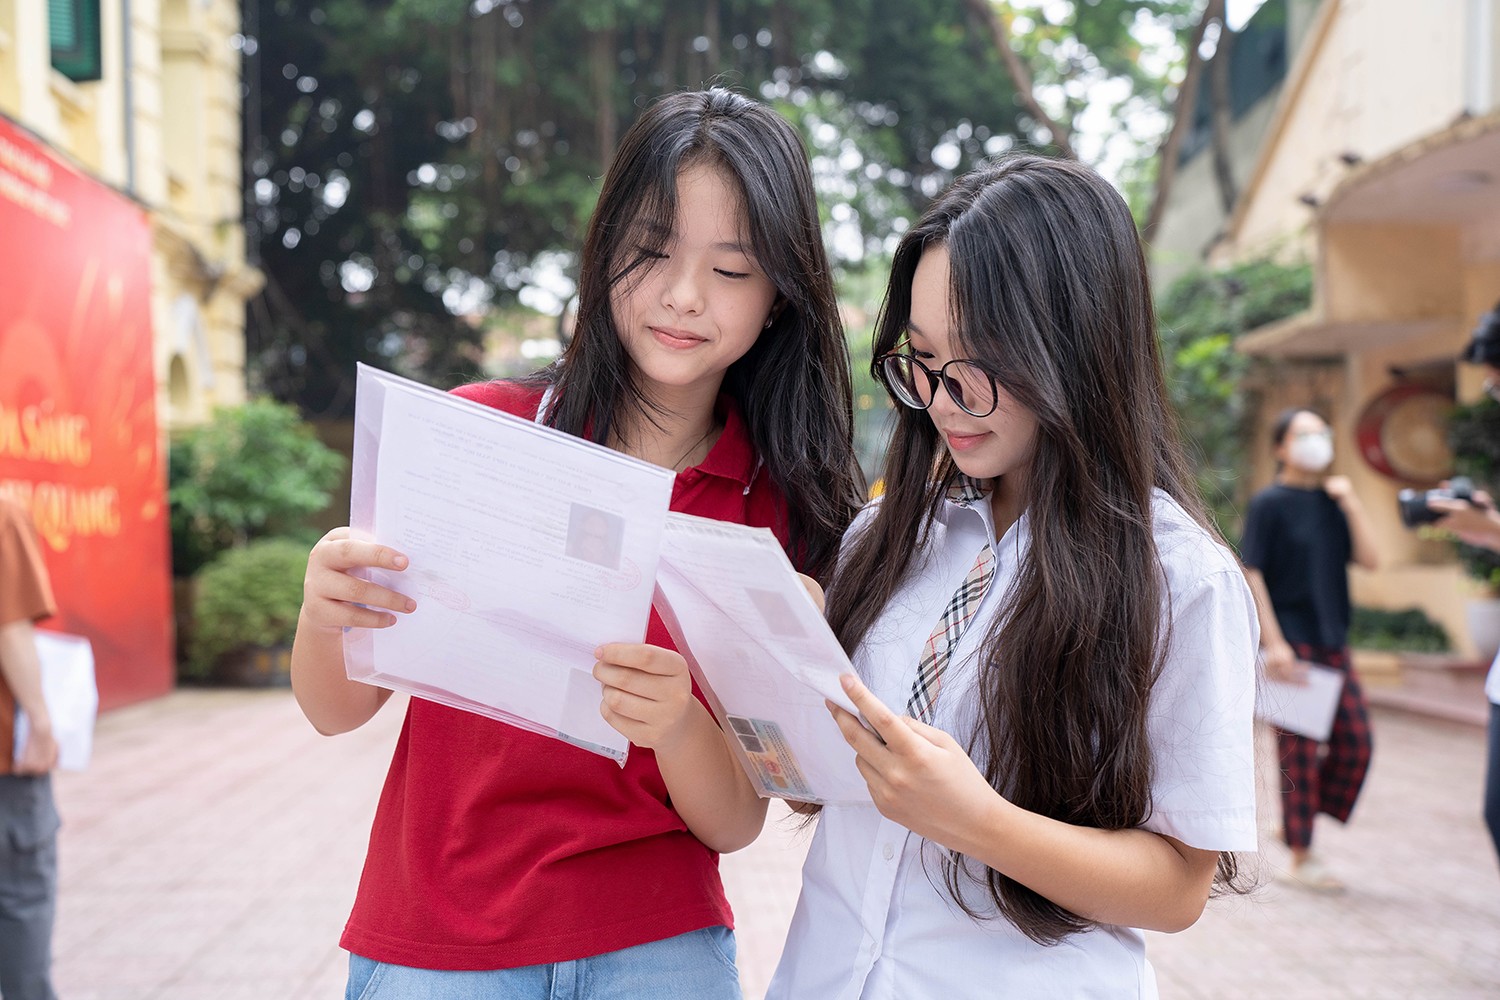 8 giờ 30, tại điểm thi Trường THPT Việt Đức đã đông thí sinh có mặt để chuẩn bị làm thủ tục dự thi vào lớp 10. Hôm nay, các em được nghe phổ biến quy chế thi, đính chính sai sót thông tin đăng ký dự thi (nếu có).